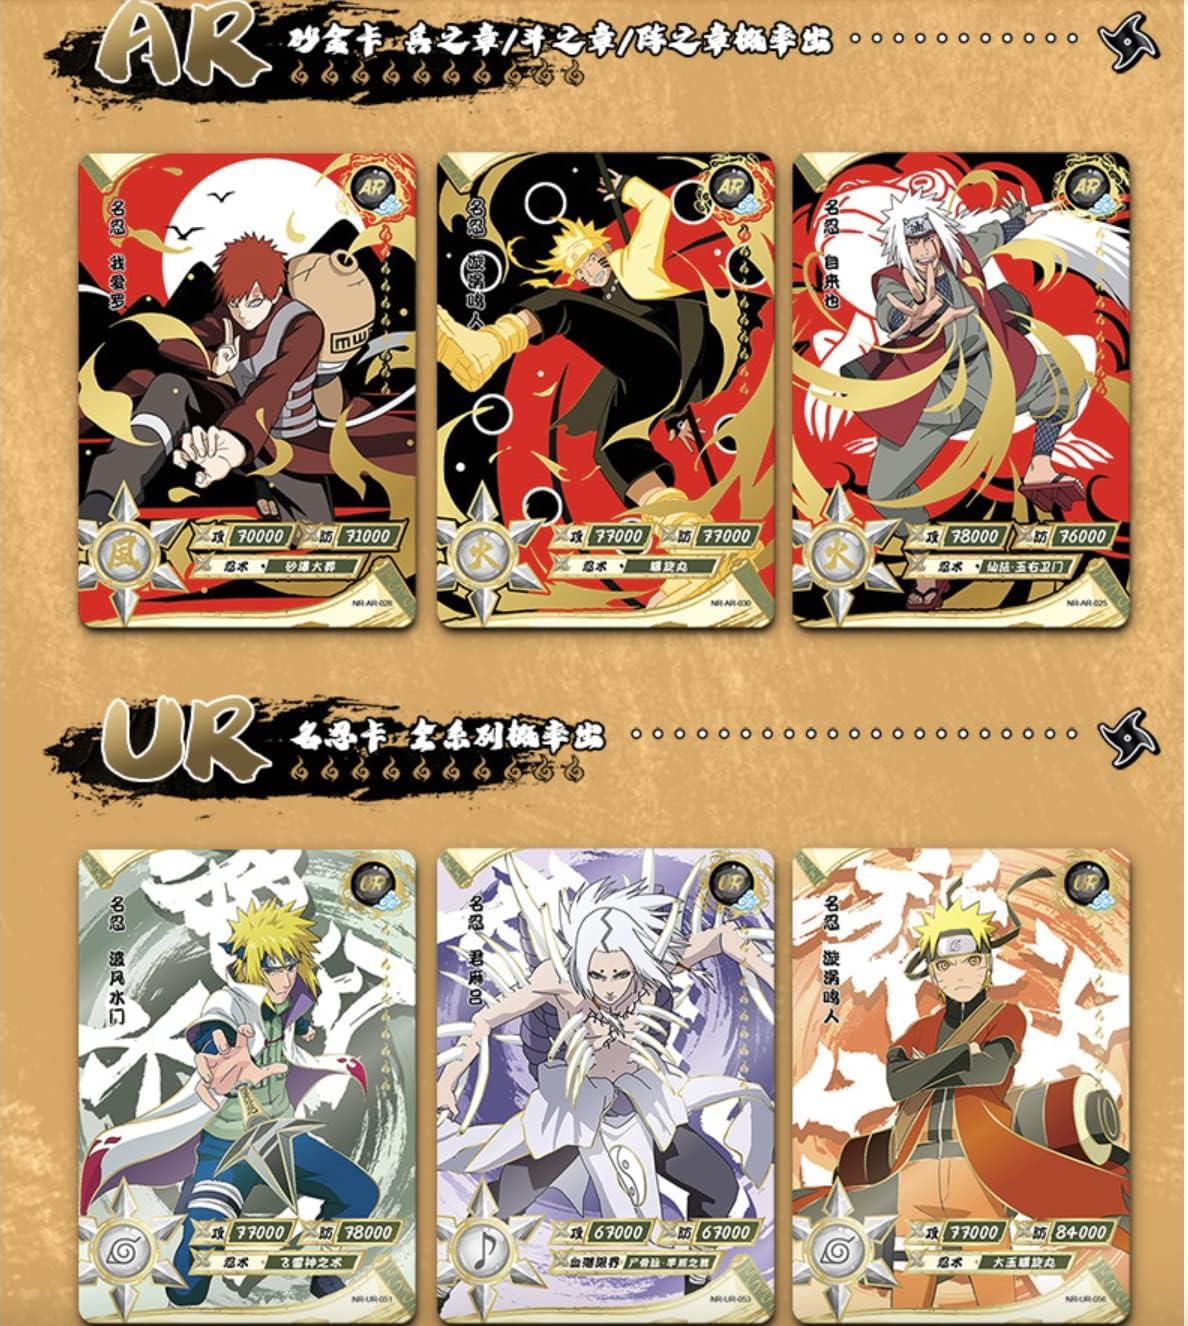 AW Anime WRLD NarutoNinja Cards Booster Box - Official Anime CCG 